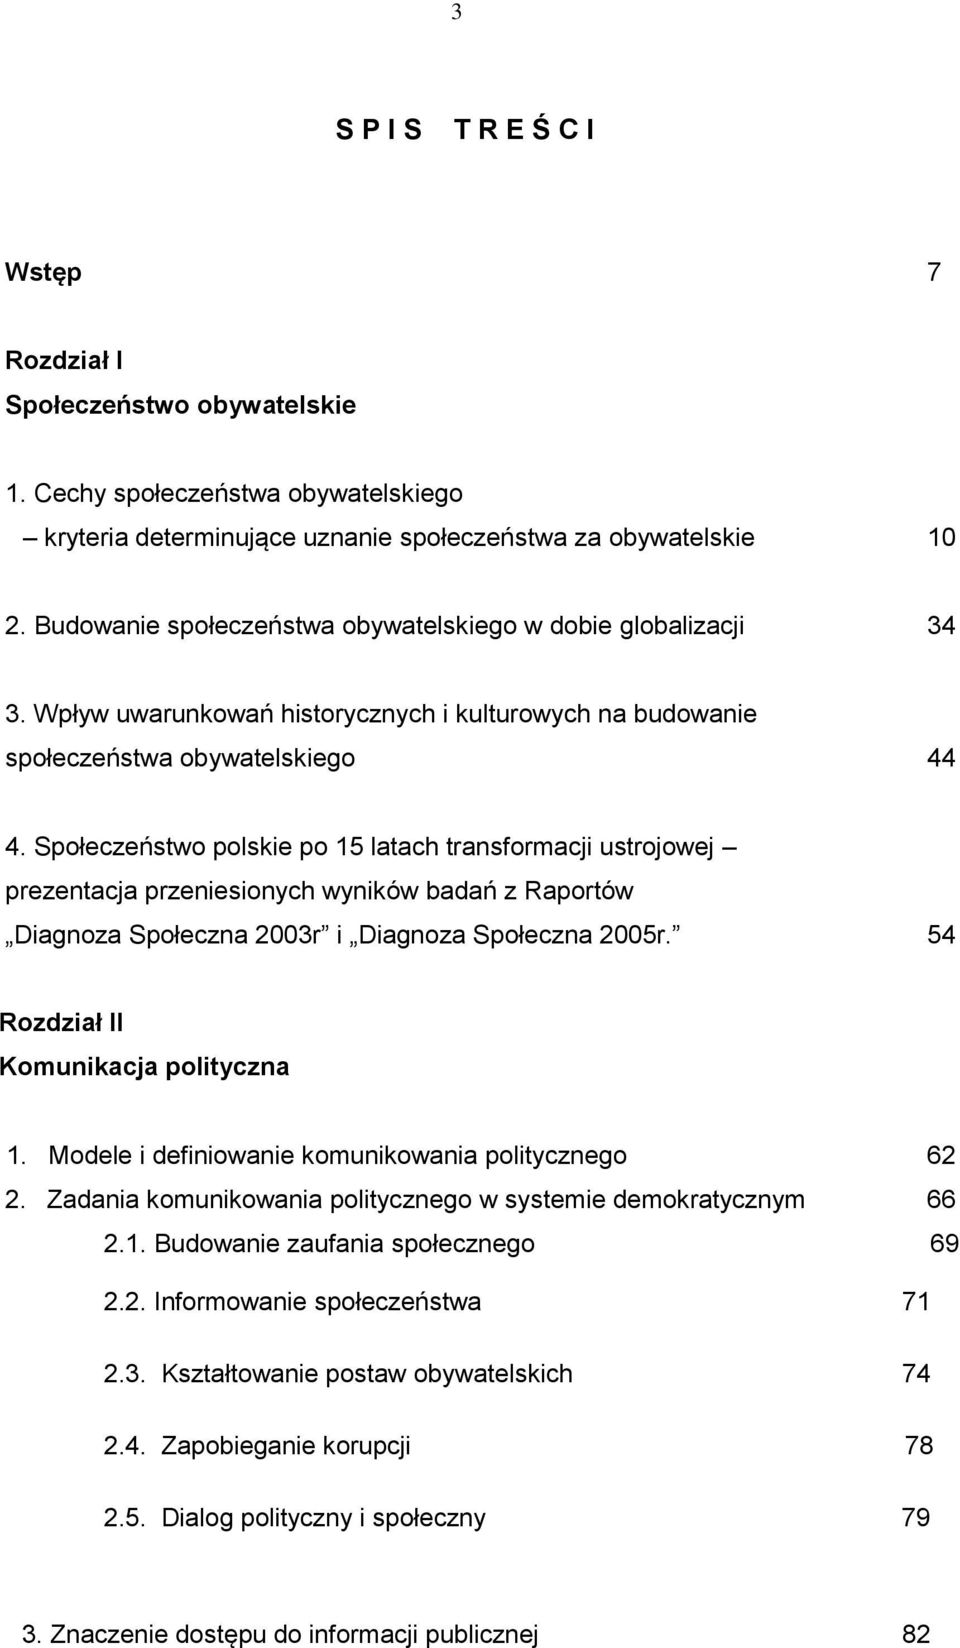 Społeczeństwo polskie po 15 latach transformacji ustrojowej prezentacja przeniesionych wyników badań z Raportów Diagnoza Społeczna 2003r i Diagnoza Społeczna 2005r.